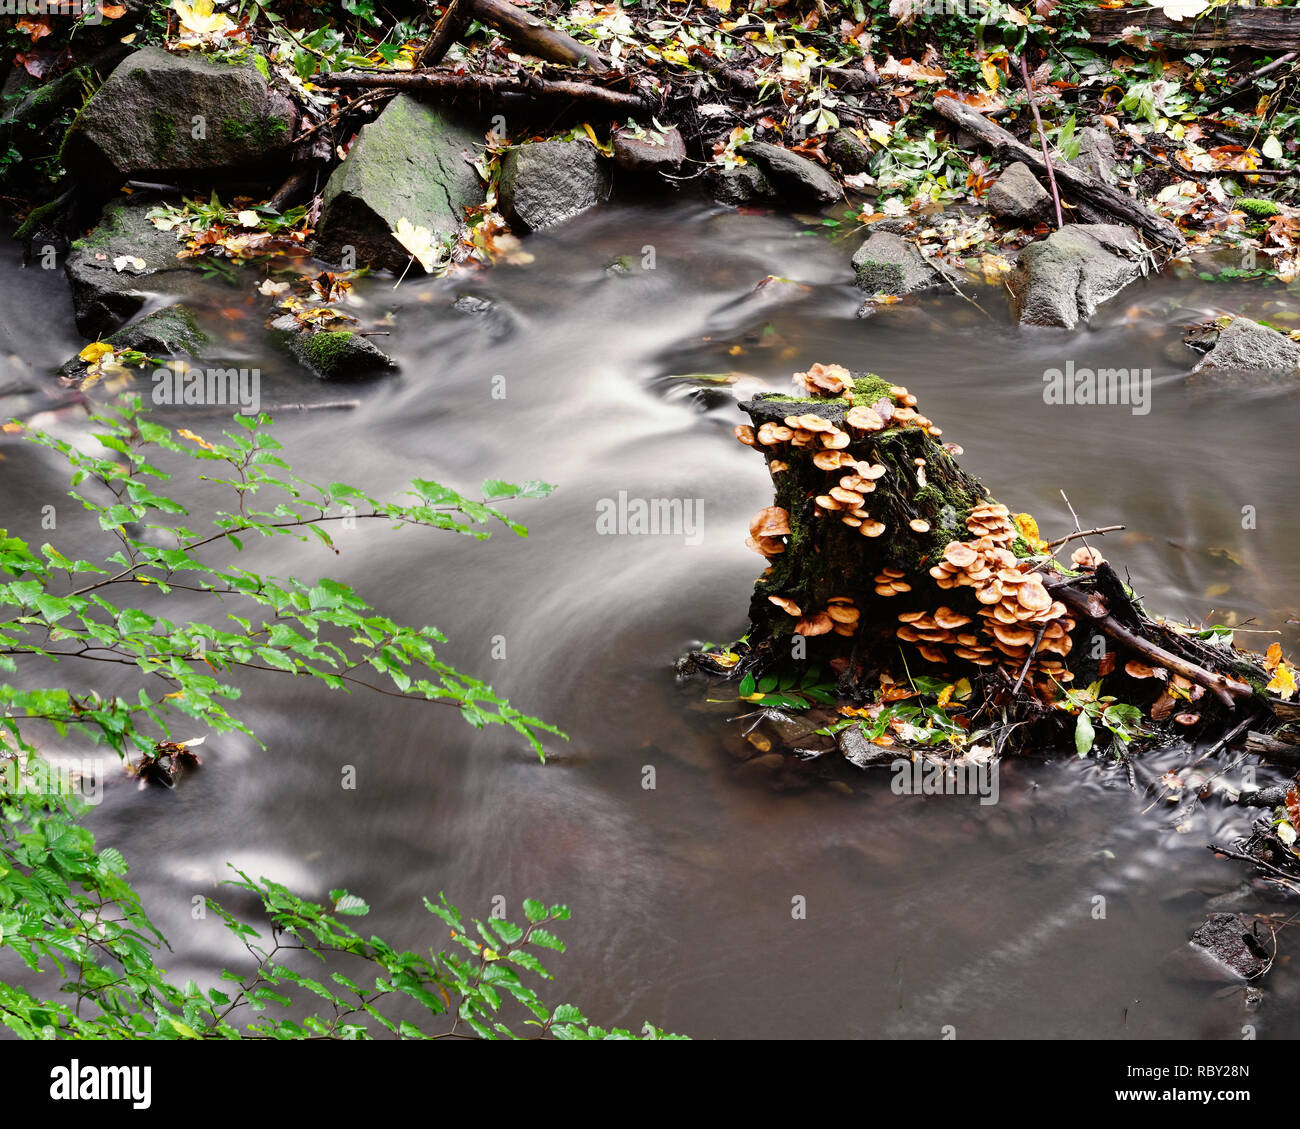 Herbststimmung - Ein Baumstumpf, der dicht mit Pilzen und Moos bewachsen ist, steht inmitten eines kleinen Flusses, Wasserbewegung in Langzeitbelichtu Stock Photo